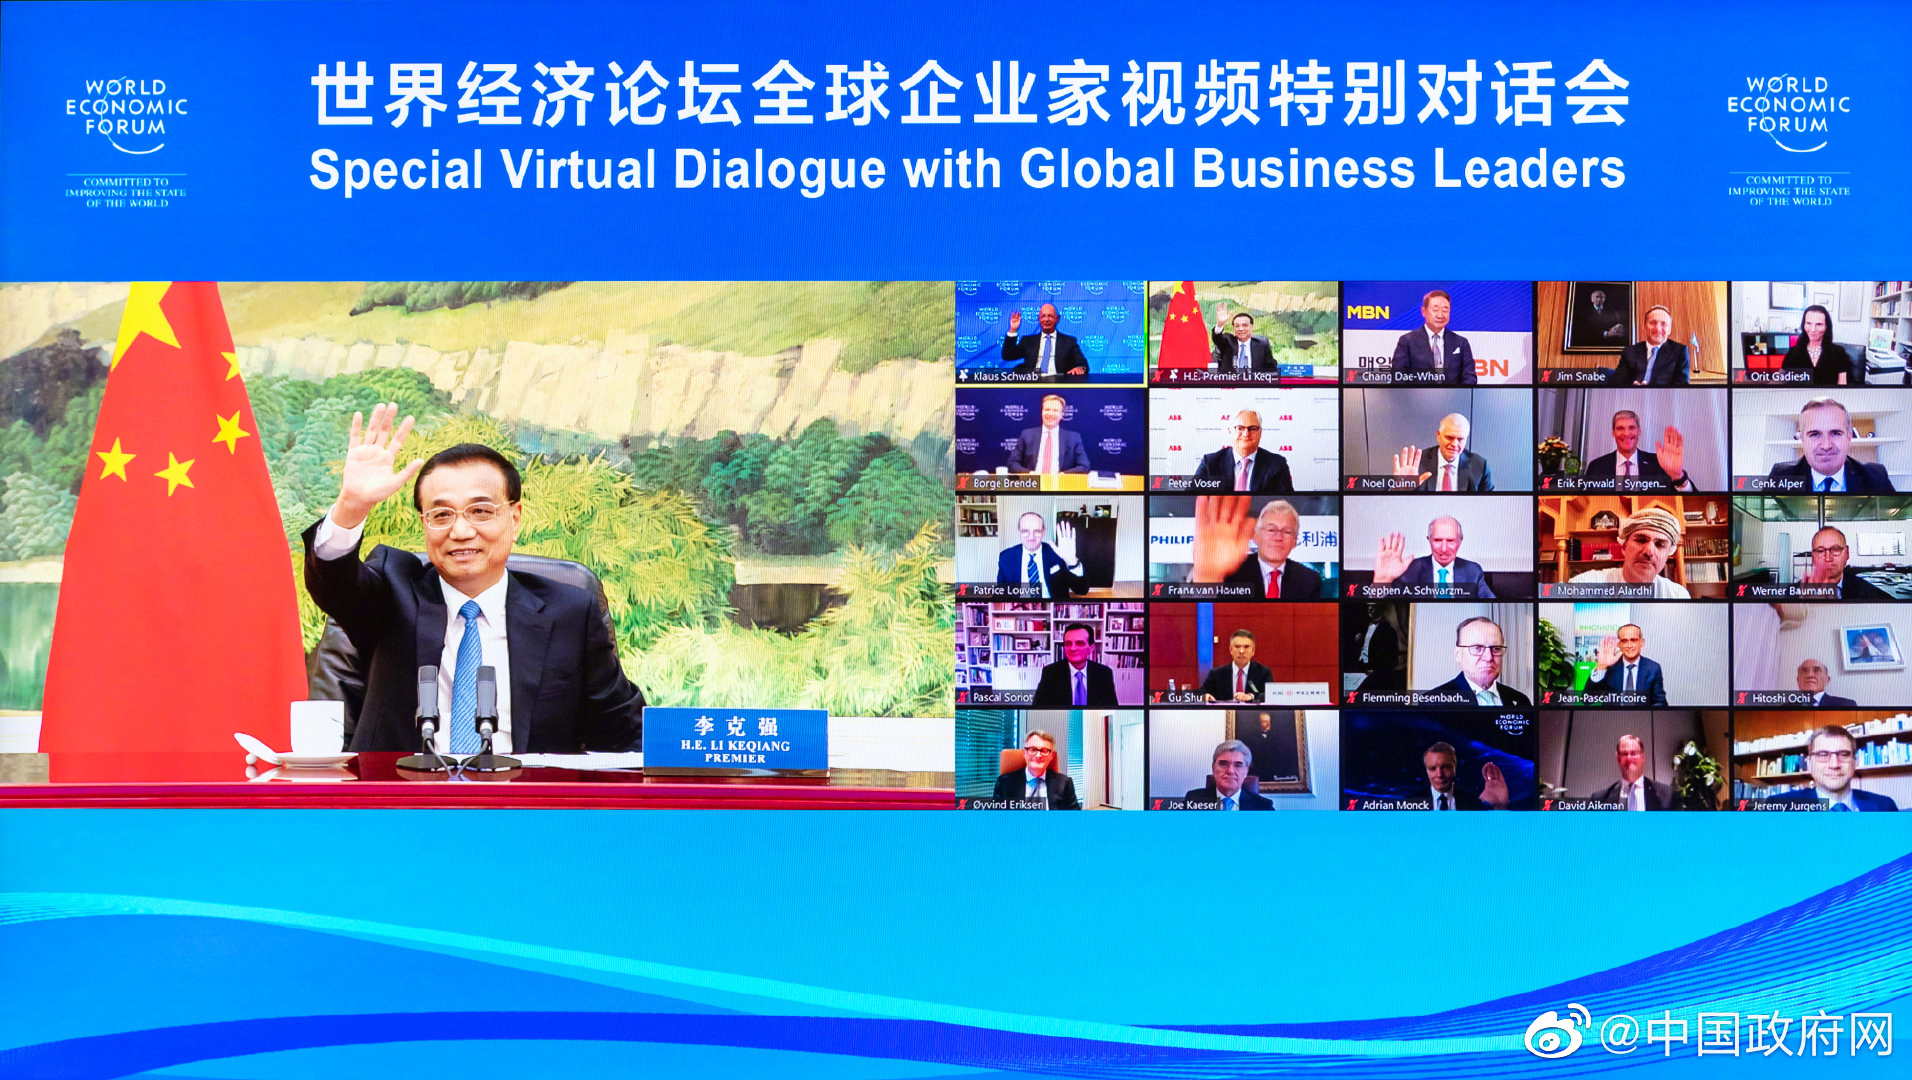 李克强总理9月15日晚出席世界经济论坛全球企业家线上特别对话会